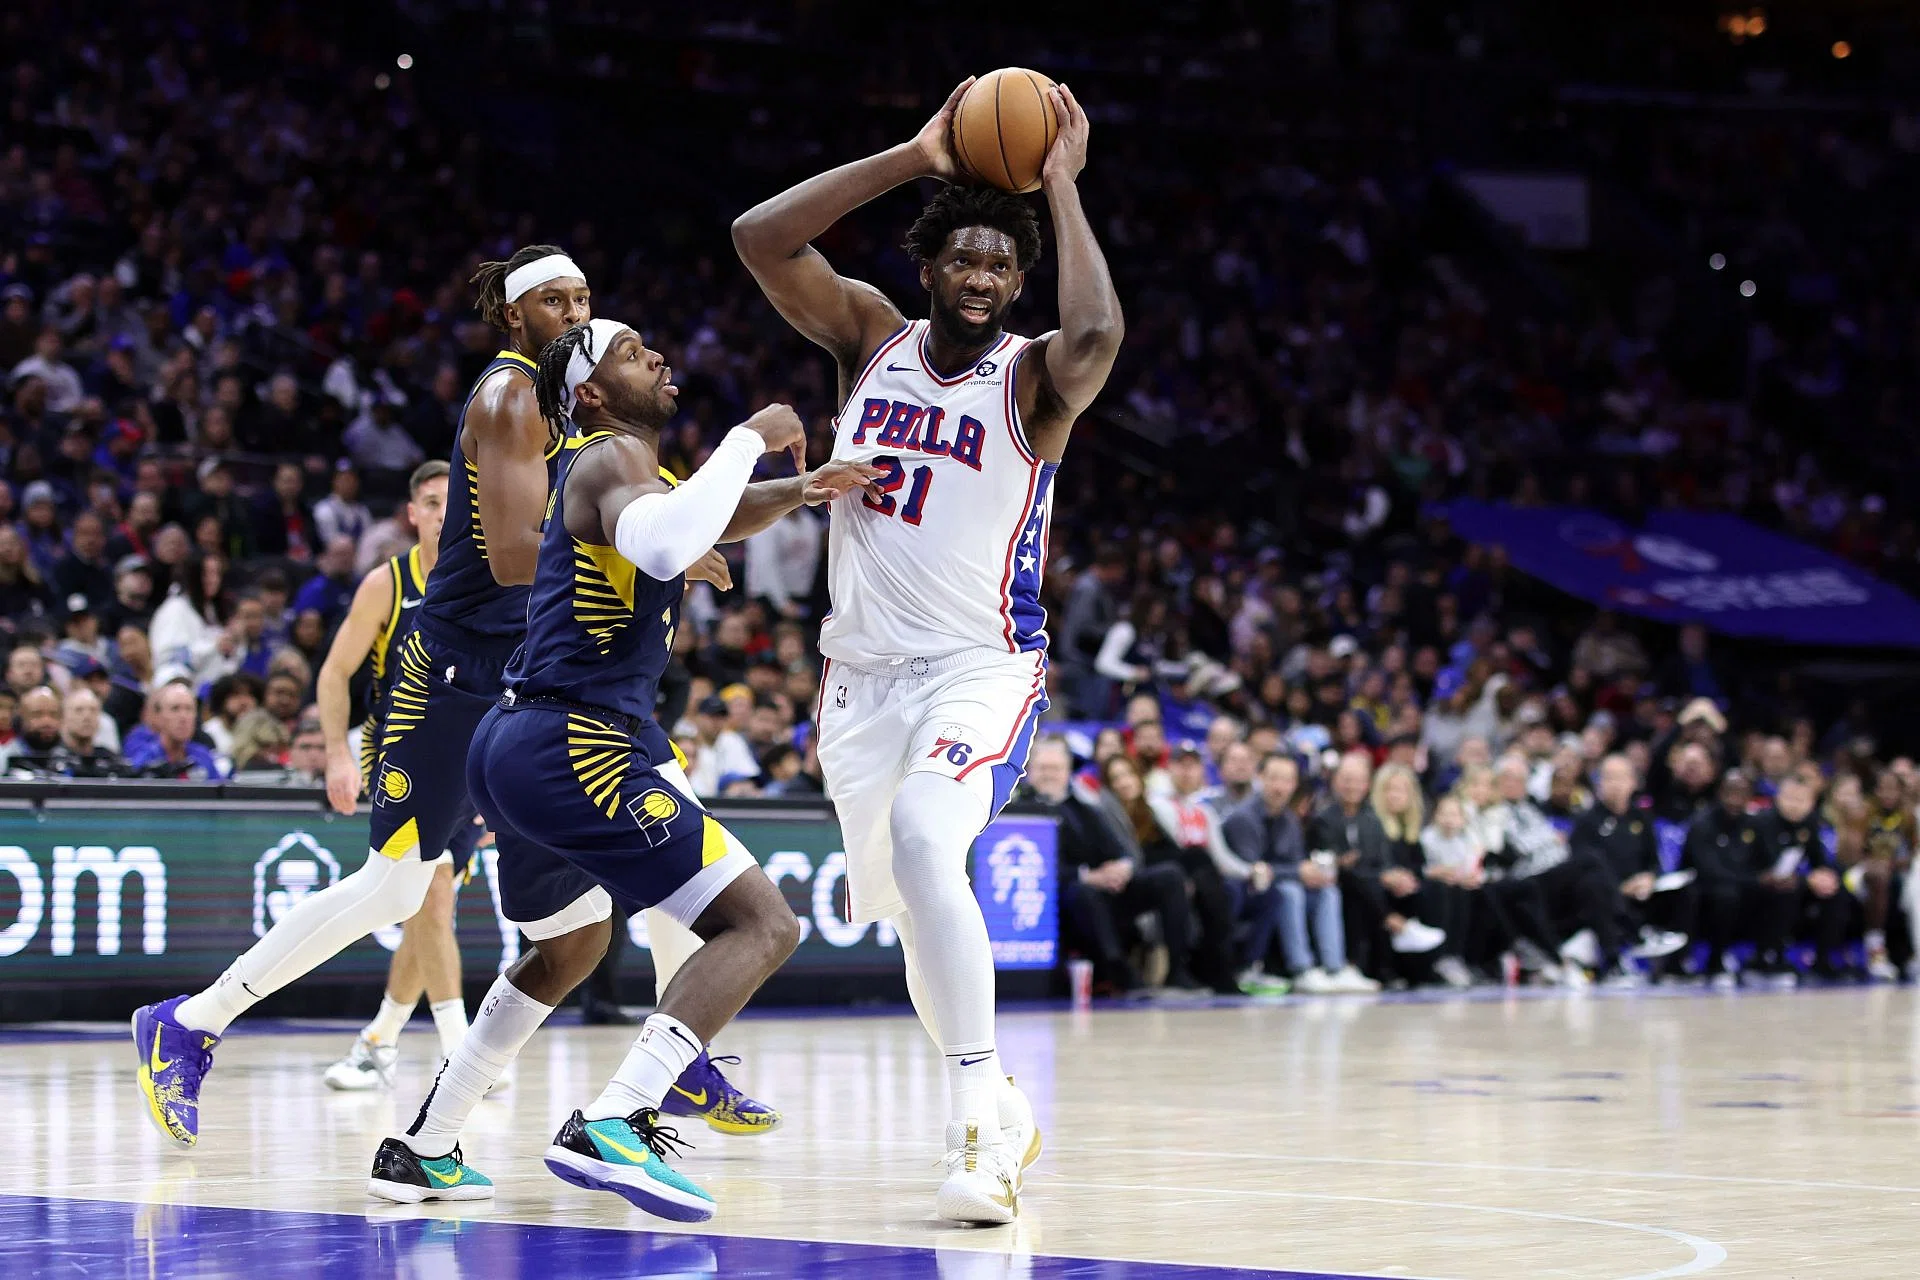 Слух о обмене в НБА: «Филадельфия 76ers» пытается поймать дуэт всех звезд Андре Драммонда и Бадди Хилда на фоне рывка в плей-офф